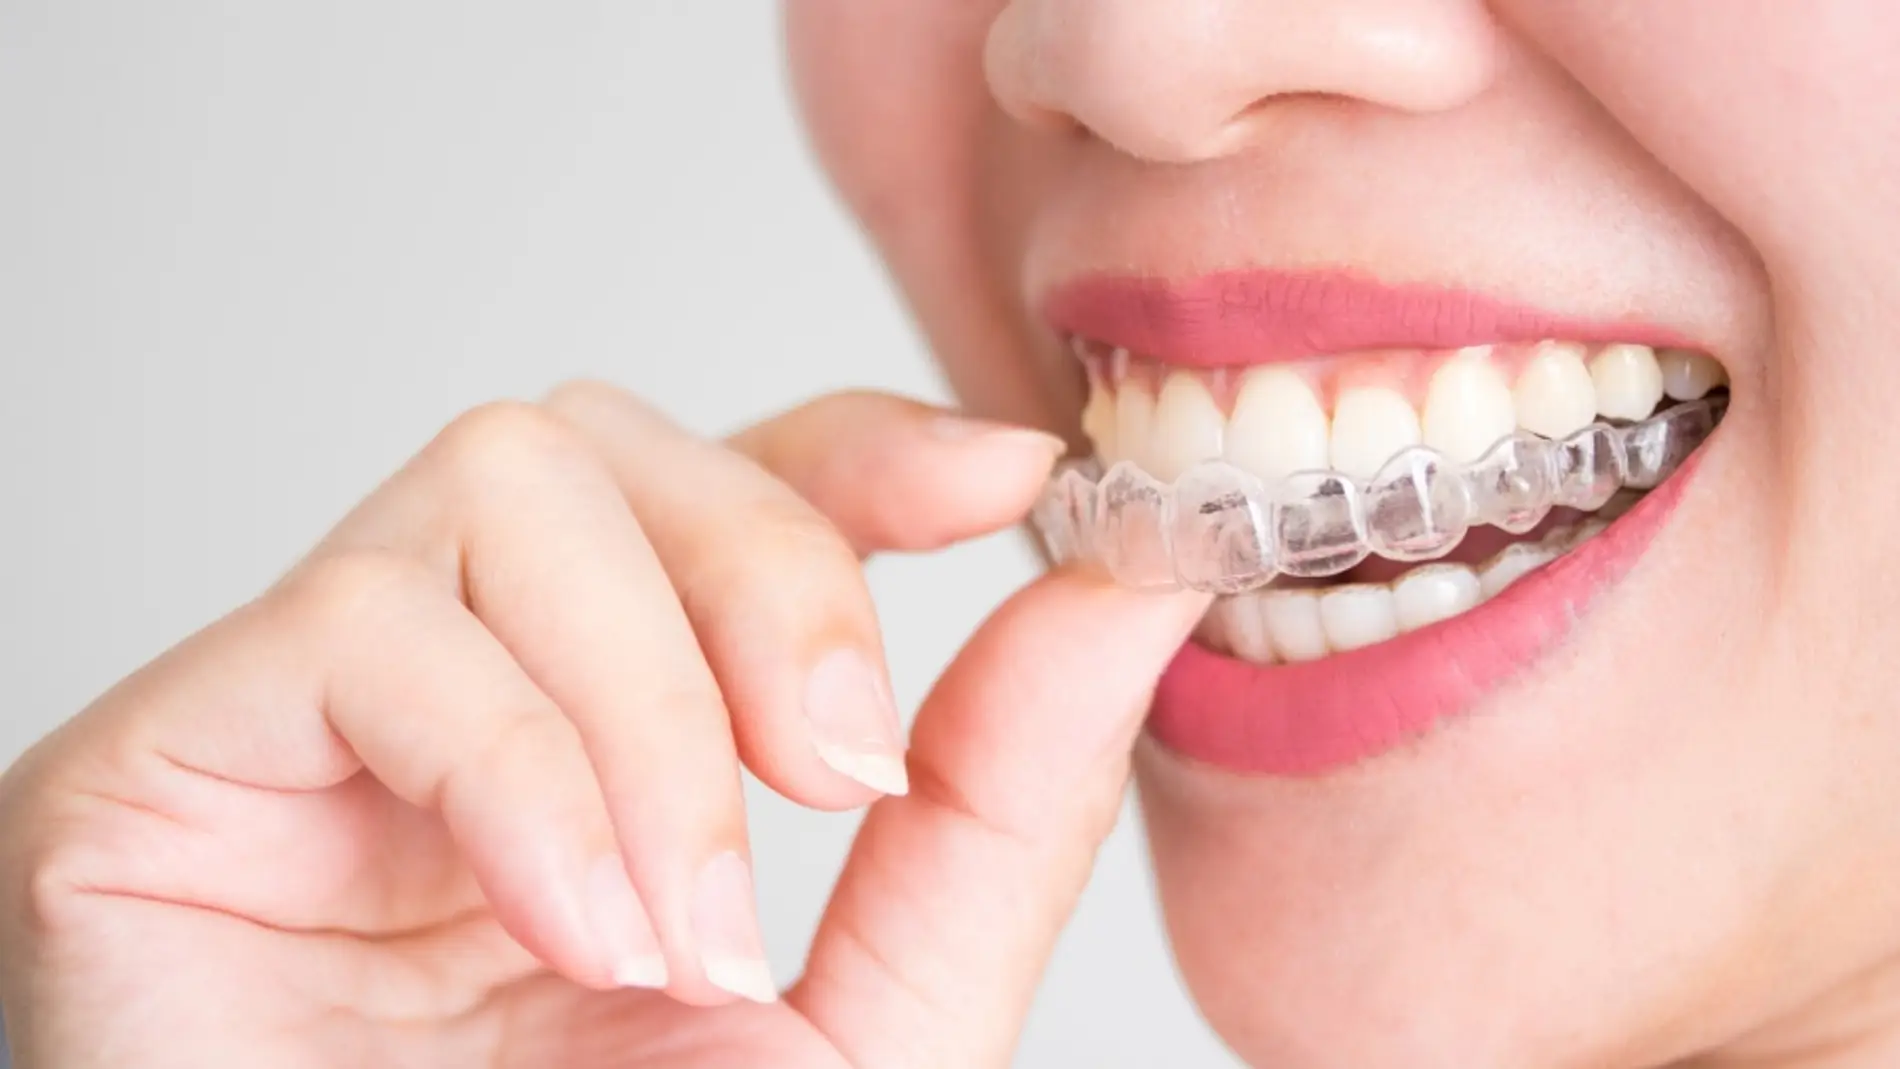 El Colegio Oficial de Dentistas de Málaga advierte sobre los peligros de comprar tratamientos dentales por internet